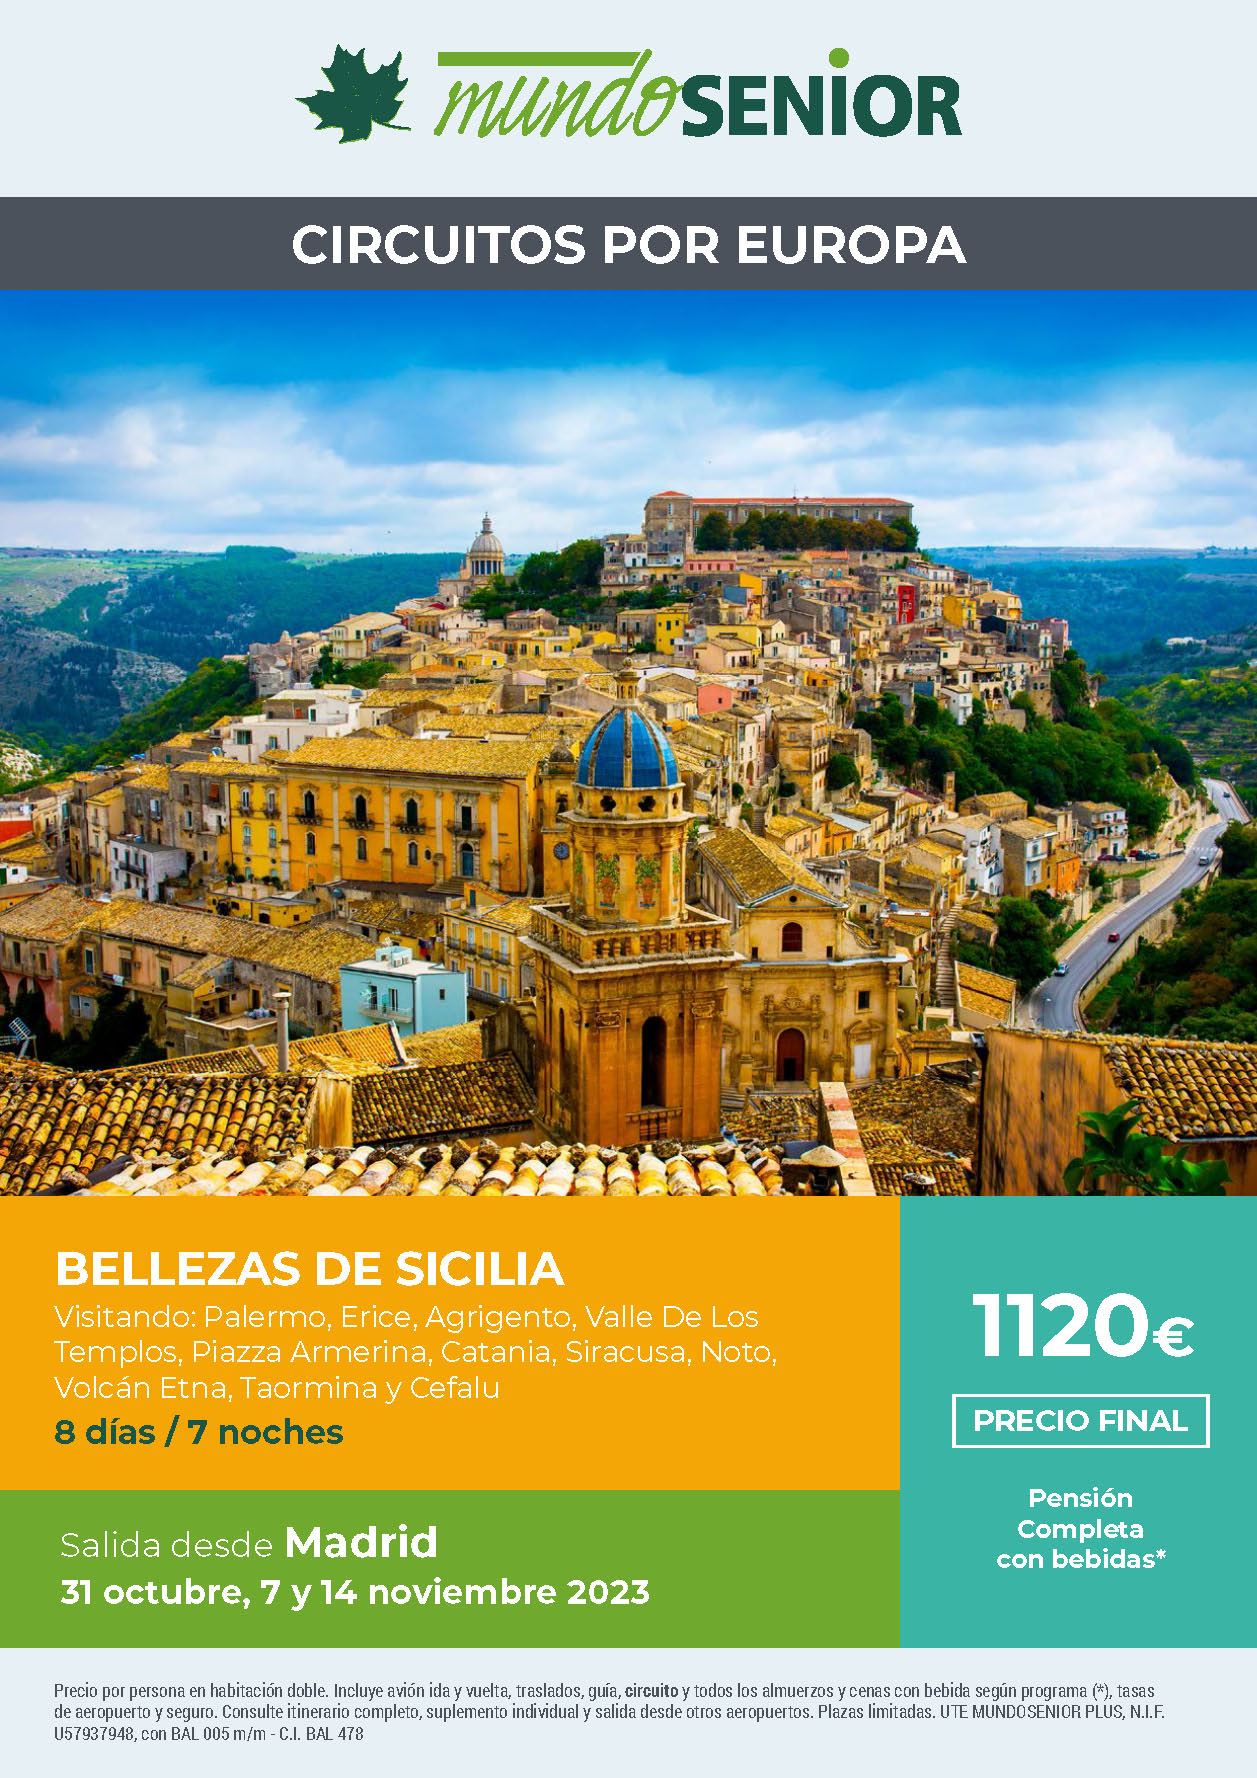 Oferta Mundo Senior circuito Bellezas de Sicilia 8 dias Pension Completa salidas octubre y noviembre 2023 en vuelo directo desde Madrid